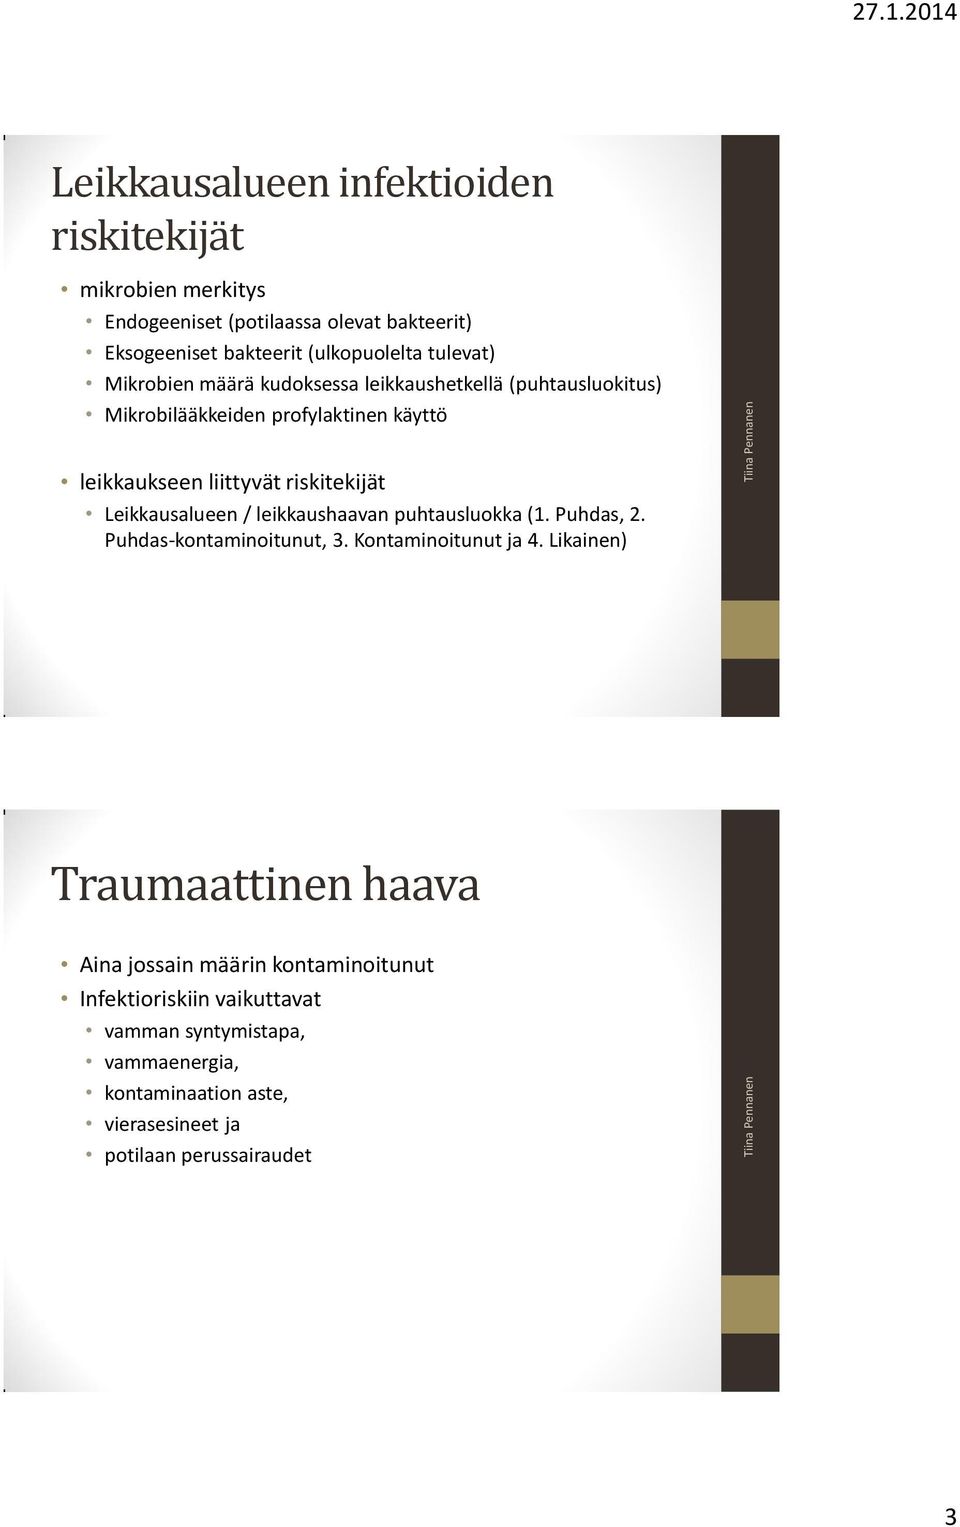 Leikkausalueen / leikkaushaavan puhtausluokka (1. Puhdas, 2. Puhdas-kontaminoitunut, 3. Kontaminoitunut ja 4.